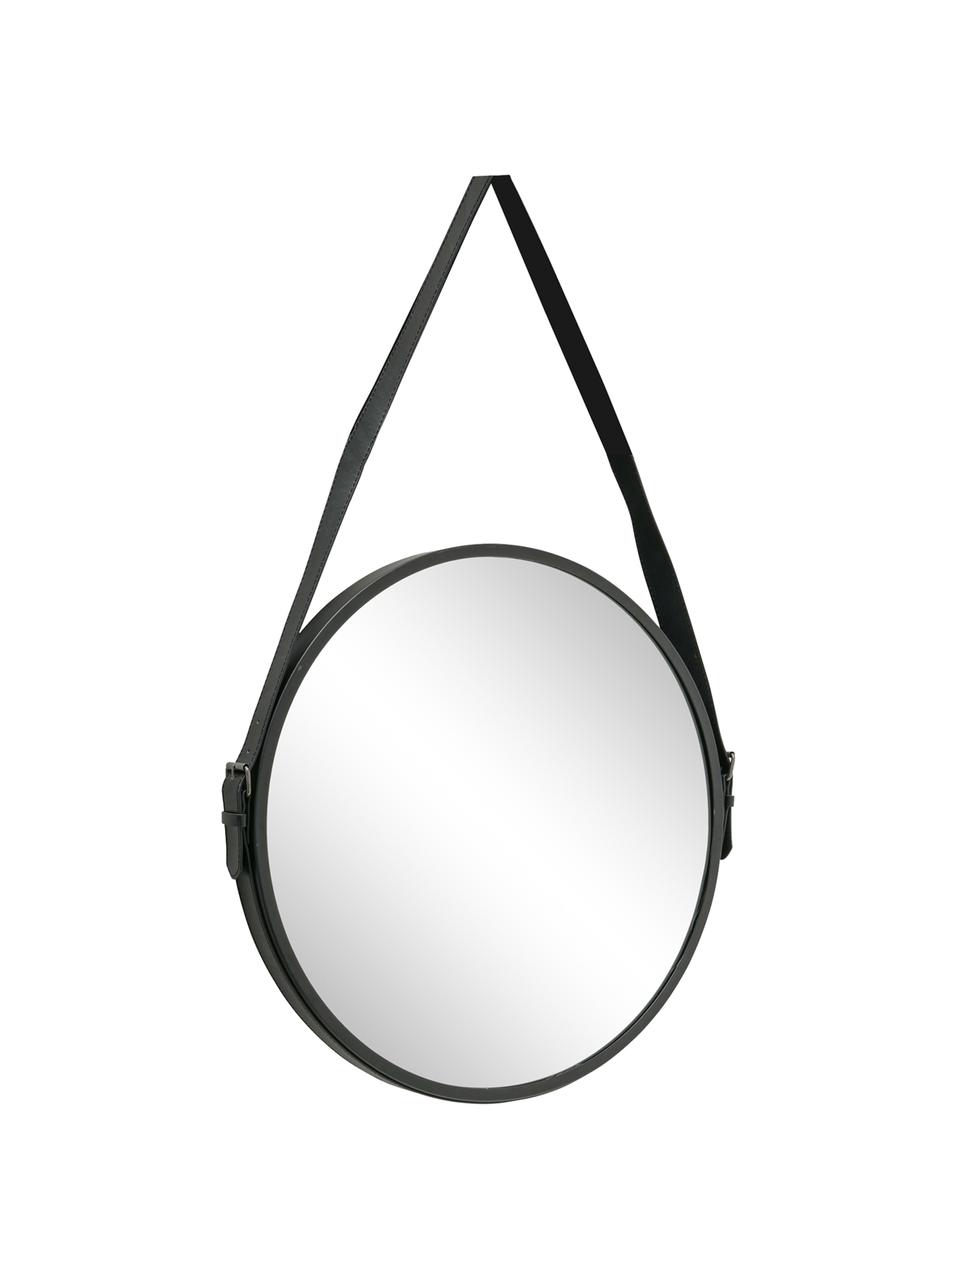 Ronde wandspiegel Paso met metalen lijst, Metaal, spiegelglas, Zwart, 48 x 73 cm